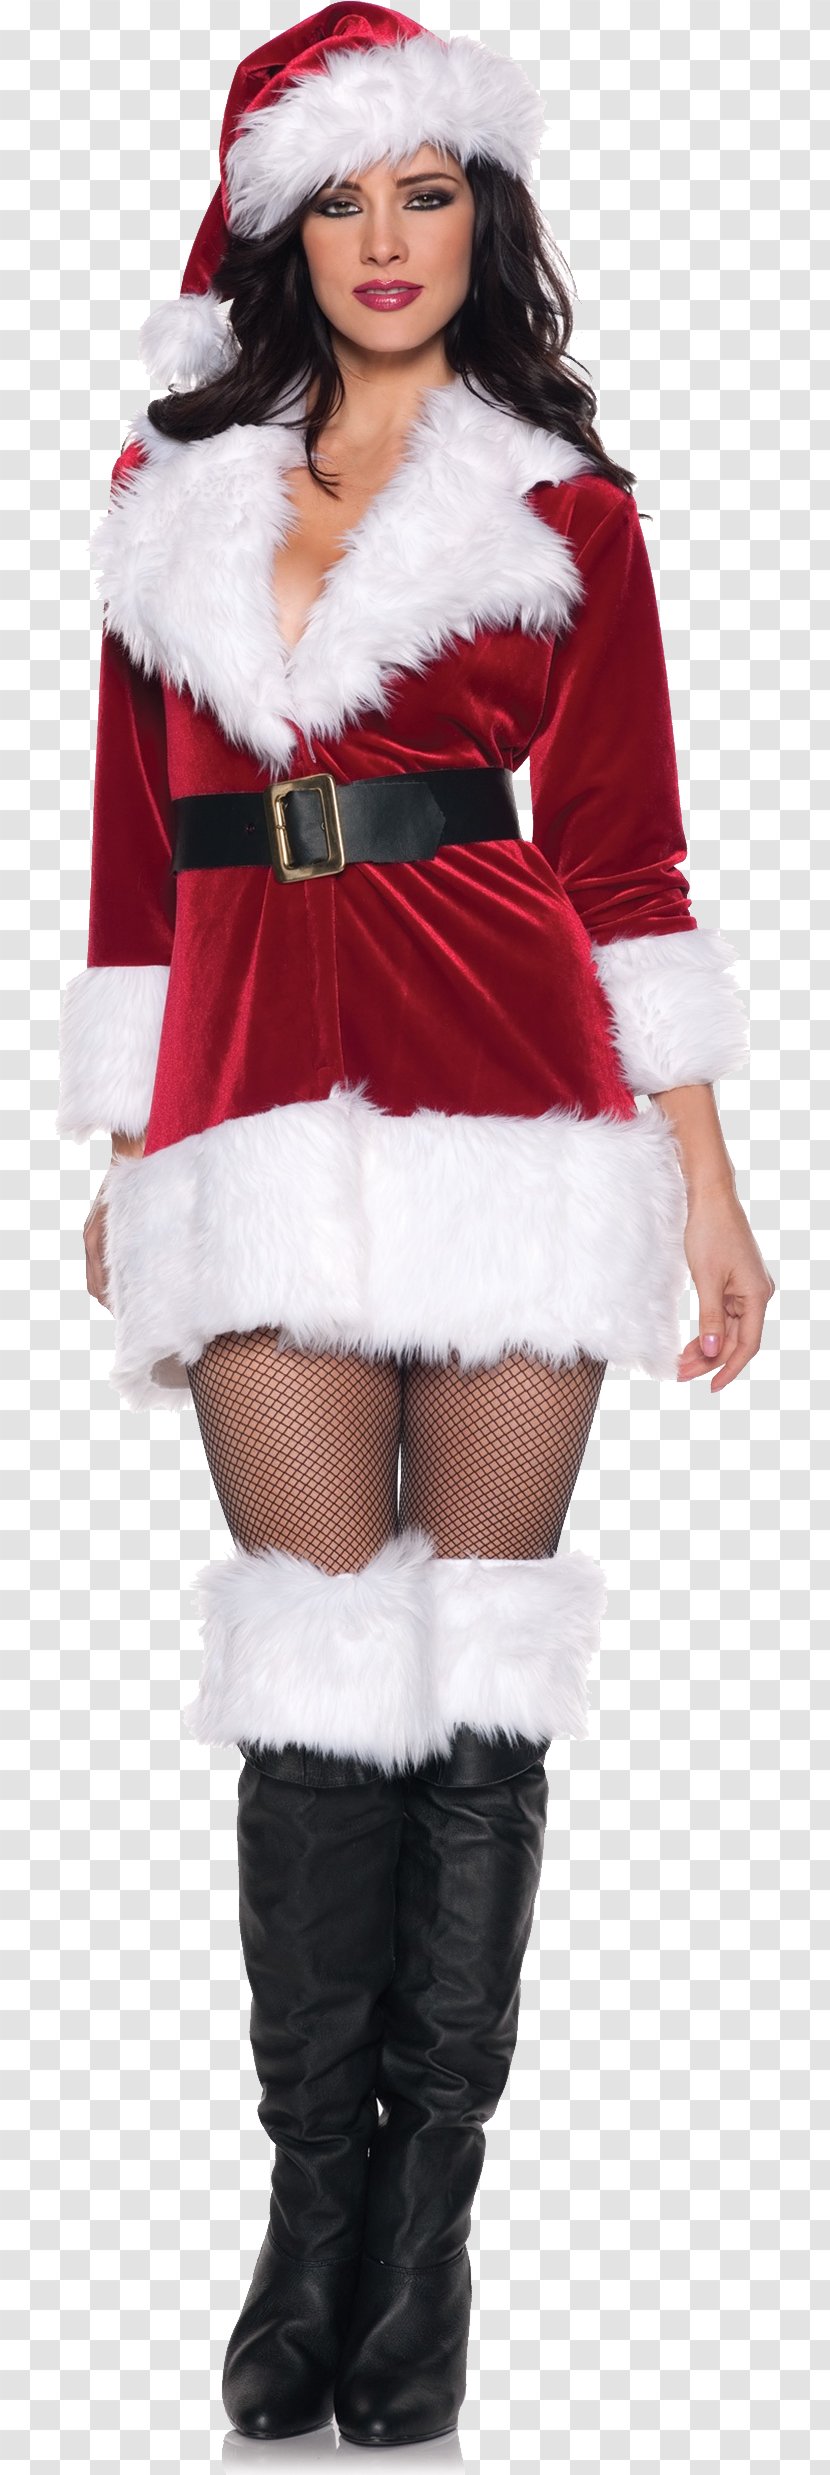 Mrs. Claus Santa Suit Costume Clothing - Neckline Transparent PNG